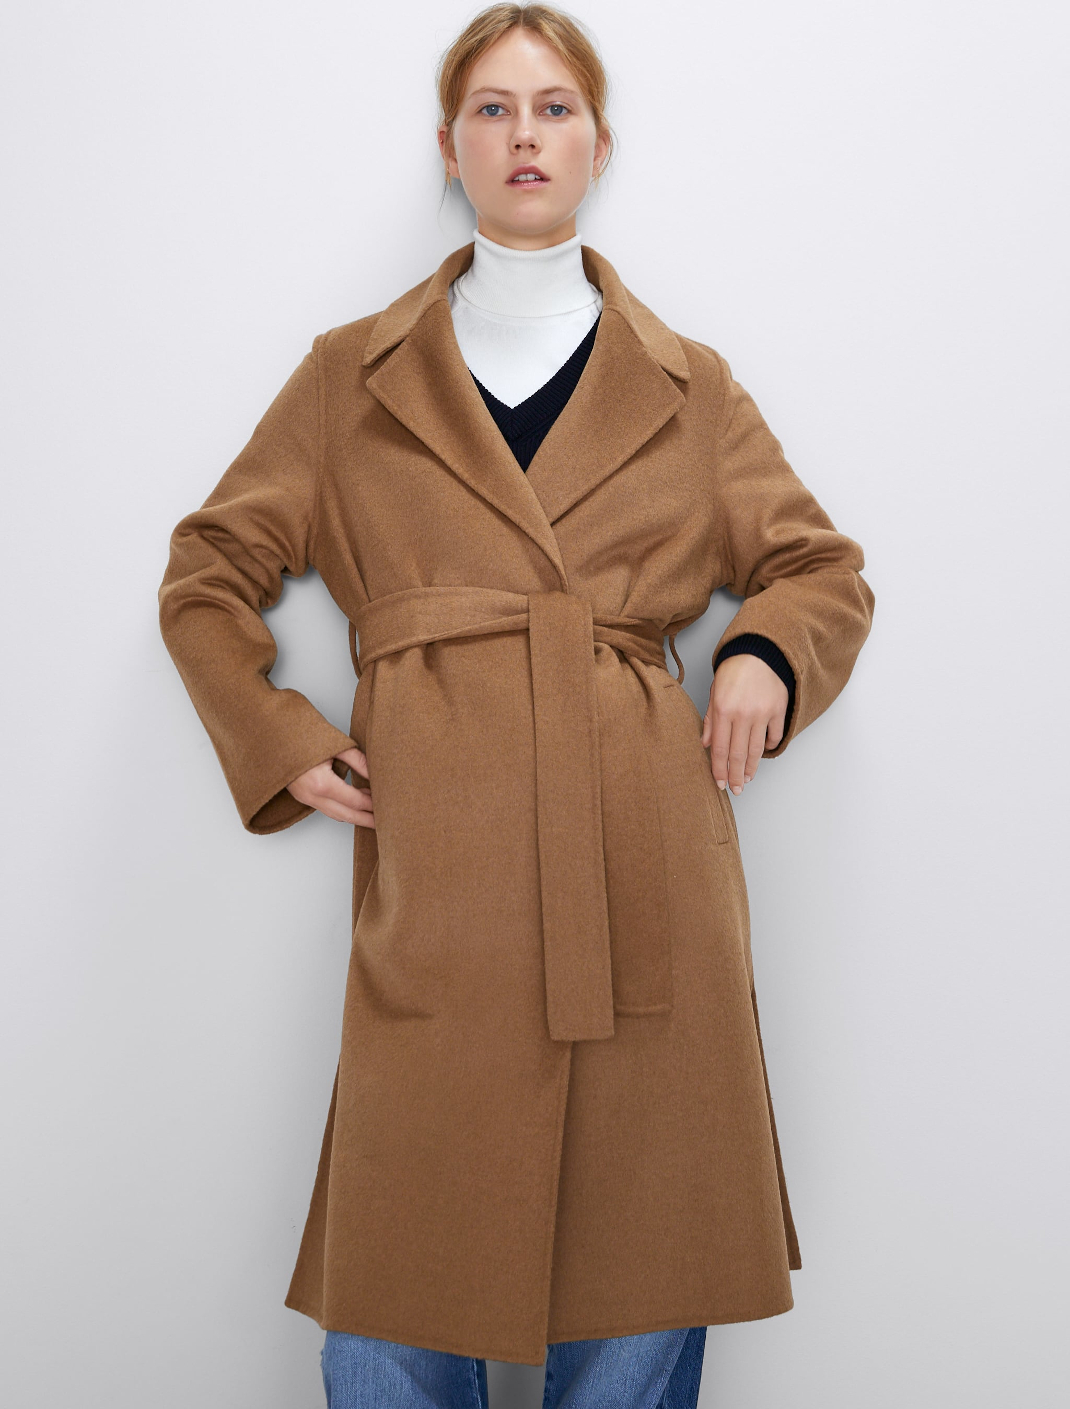 μοντέλο με παλτό Zara